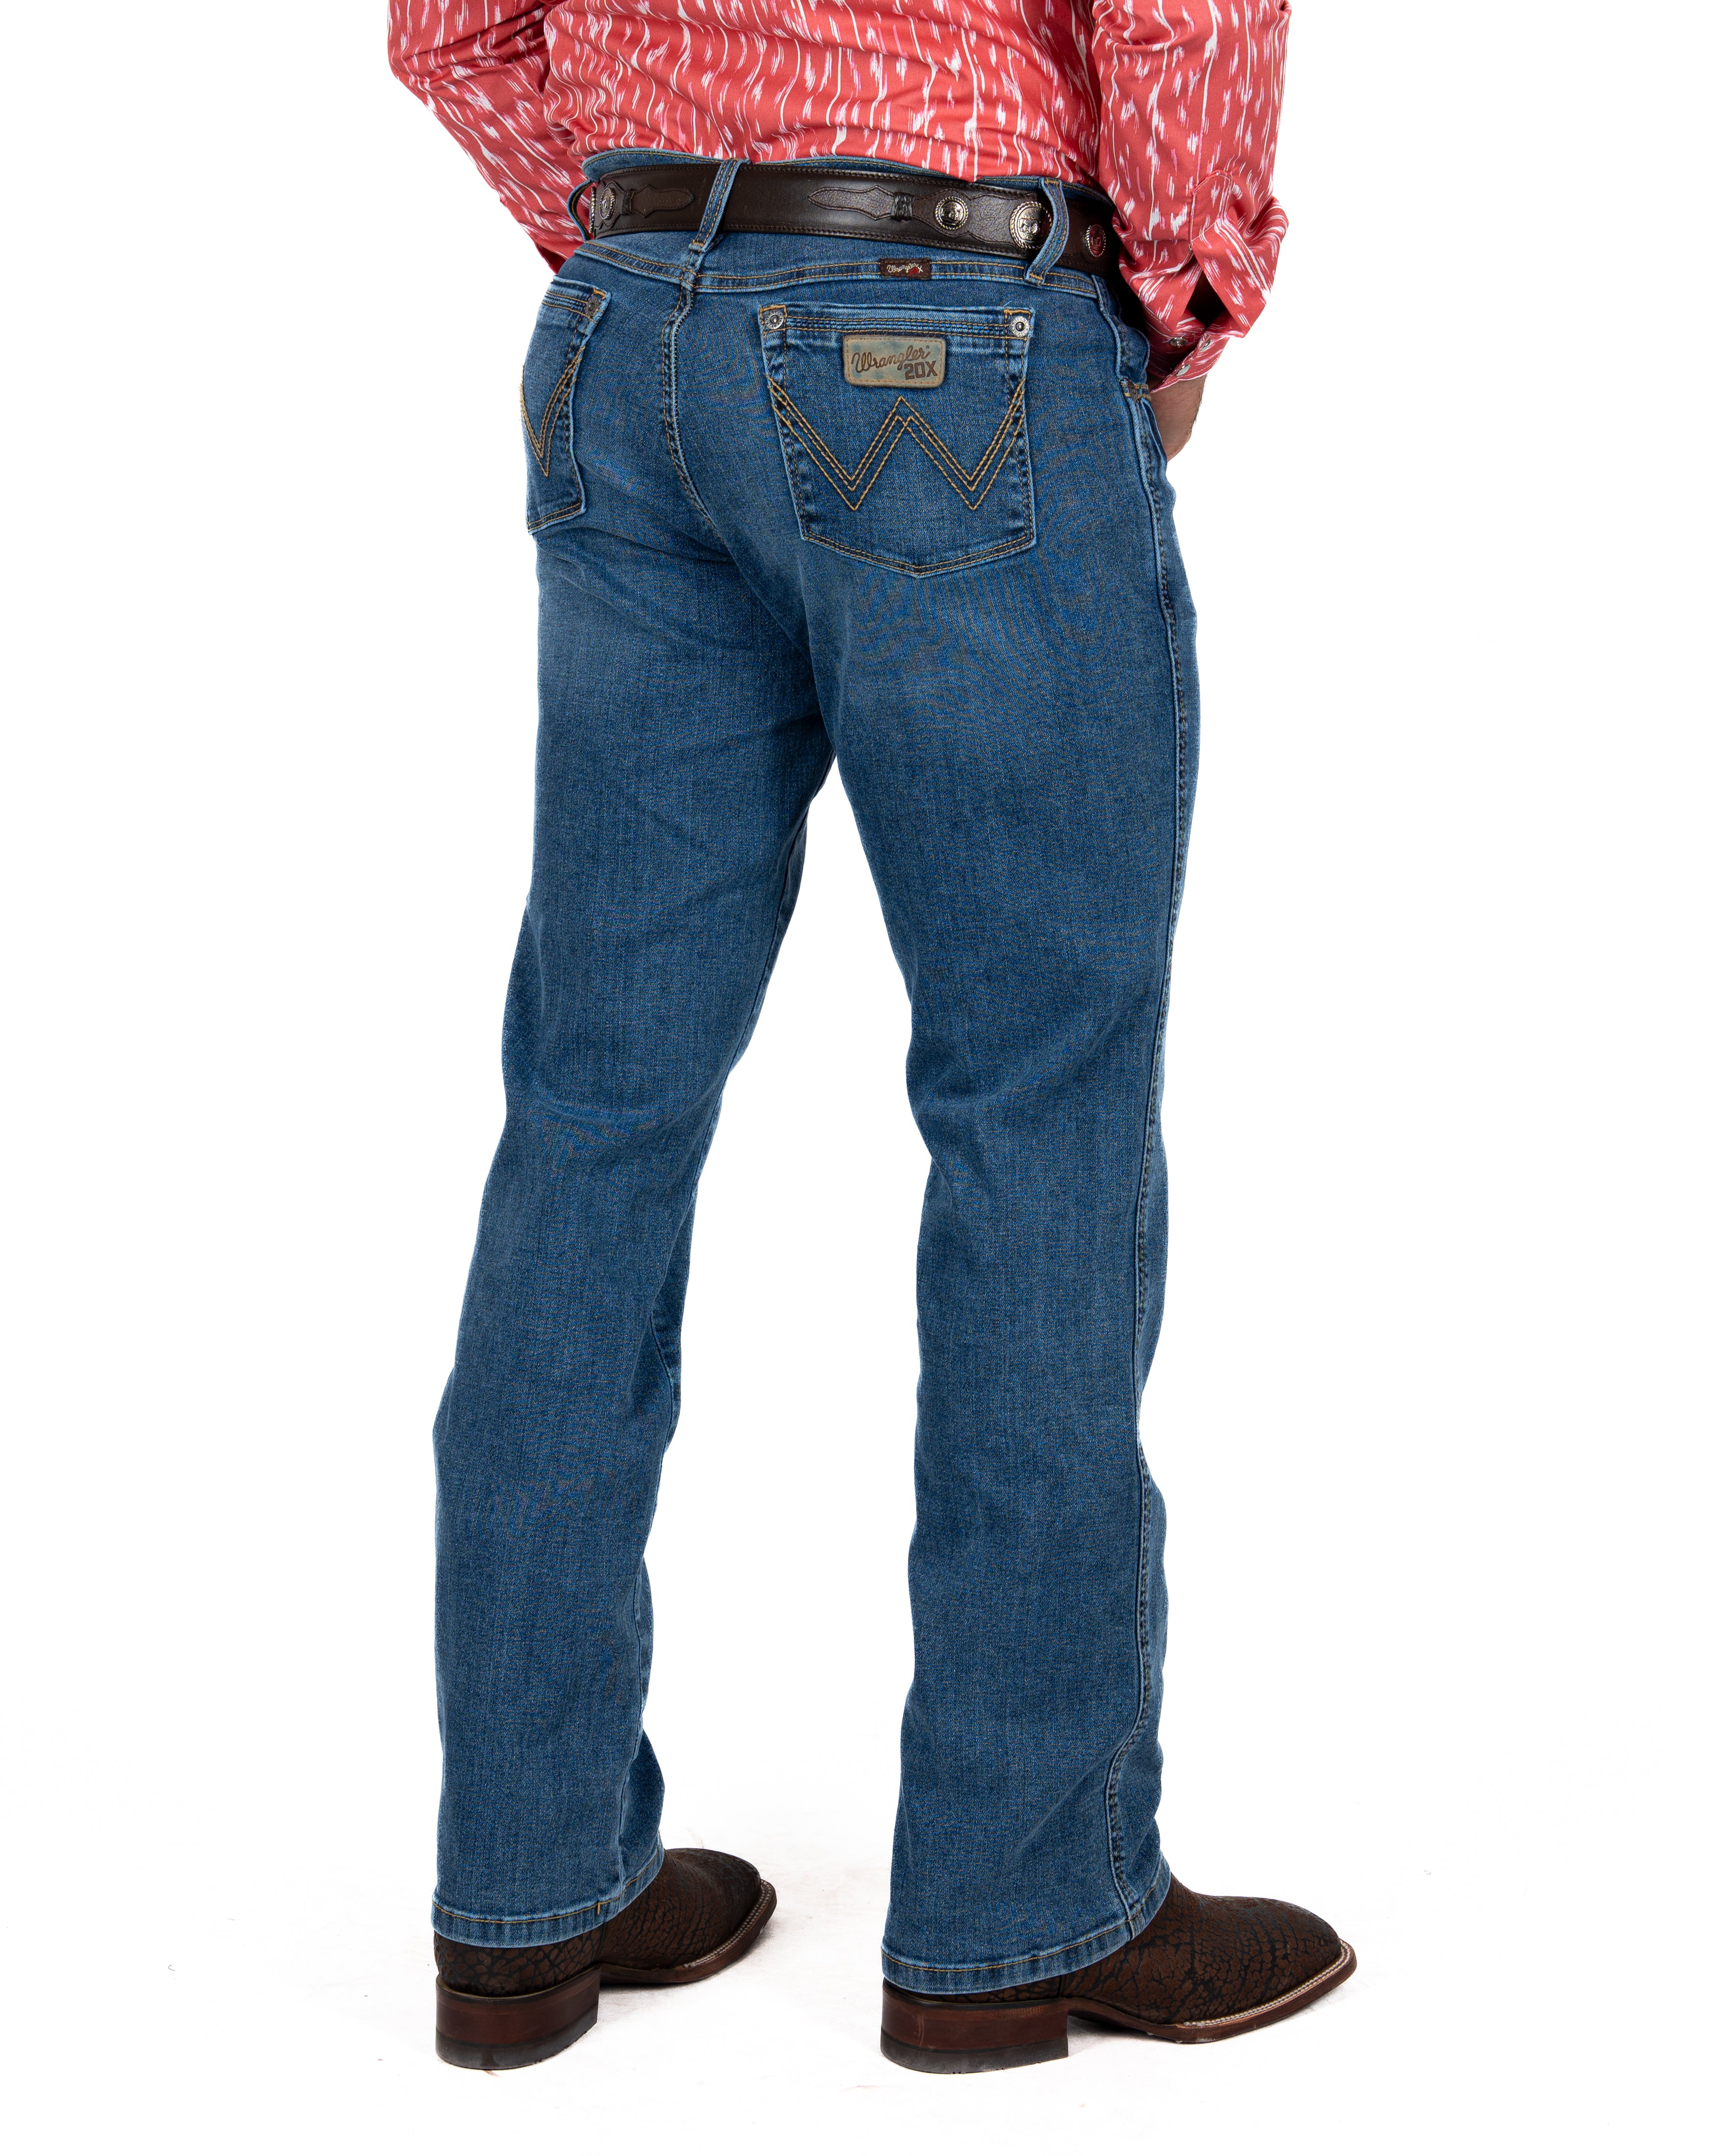 Jeans Wrangler 20X Slim Boot Caballero